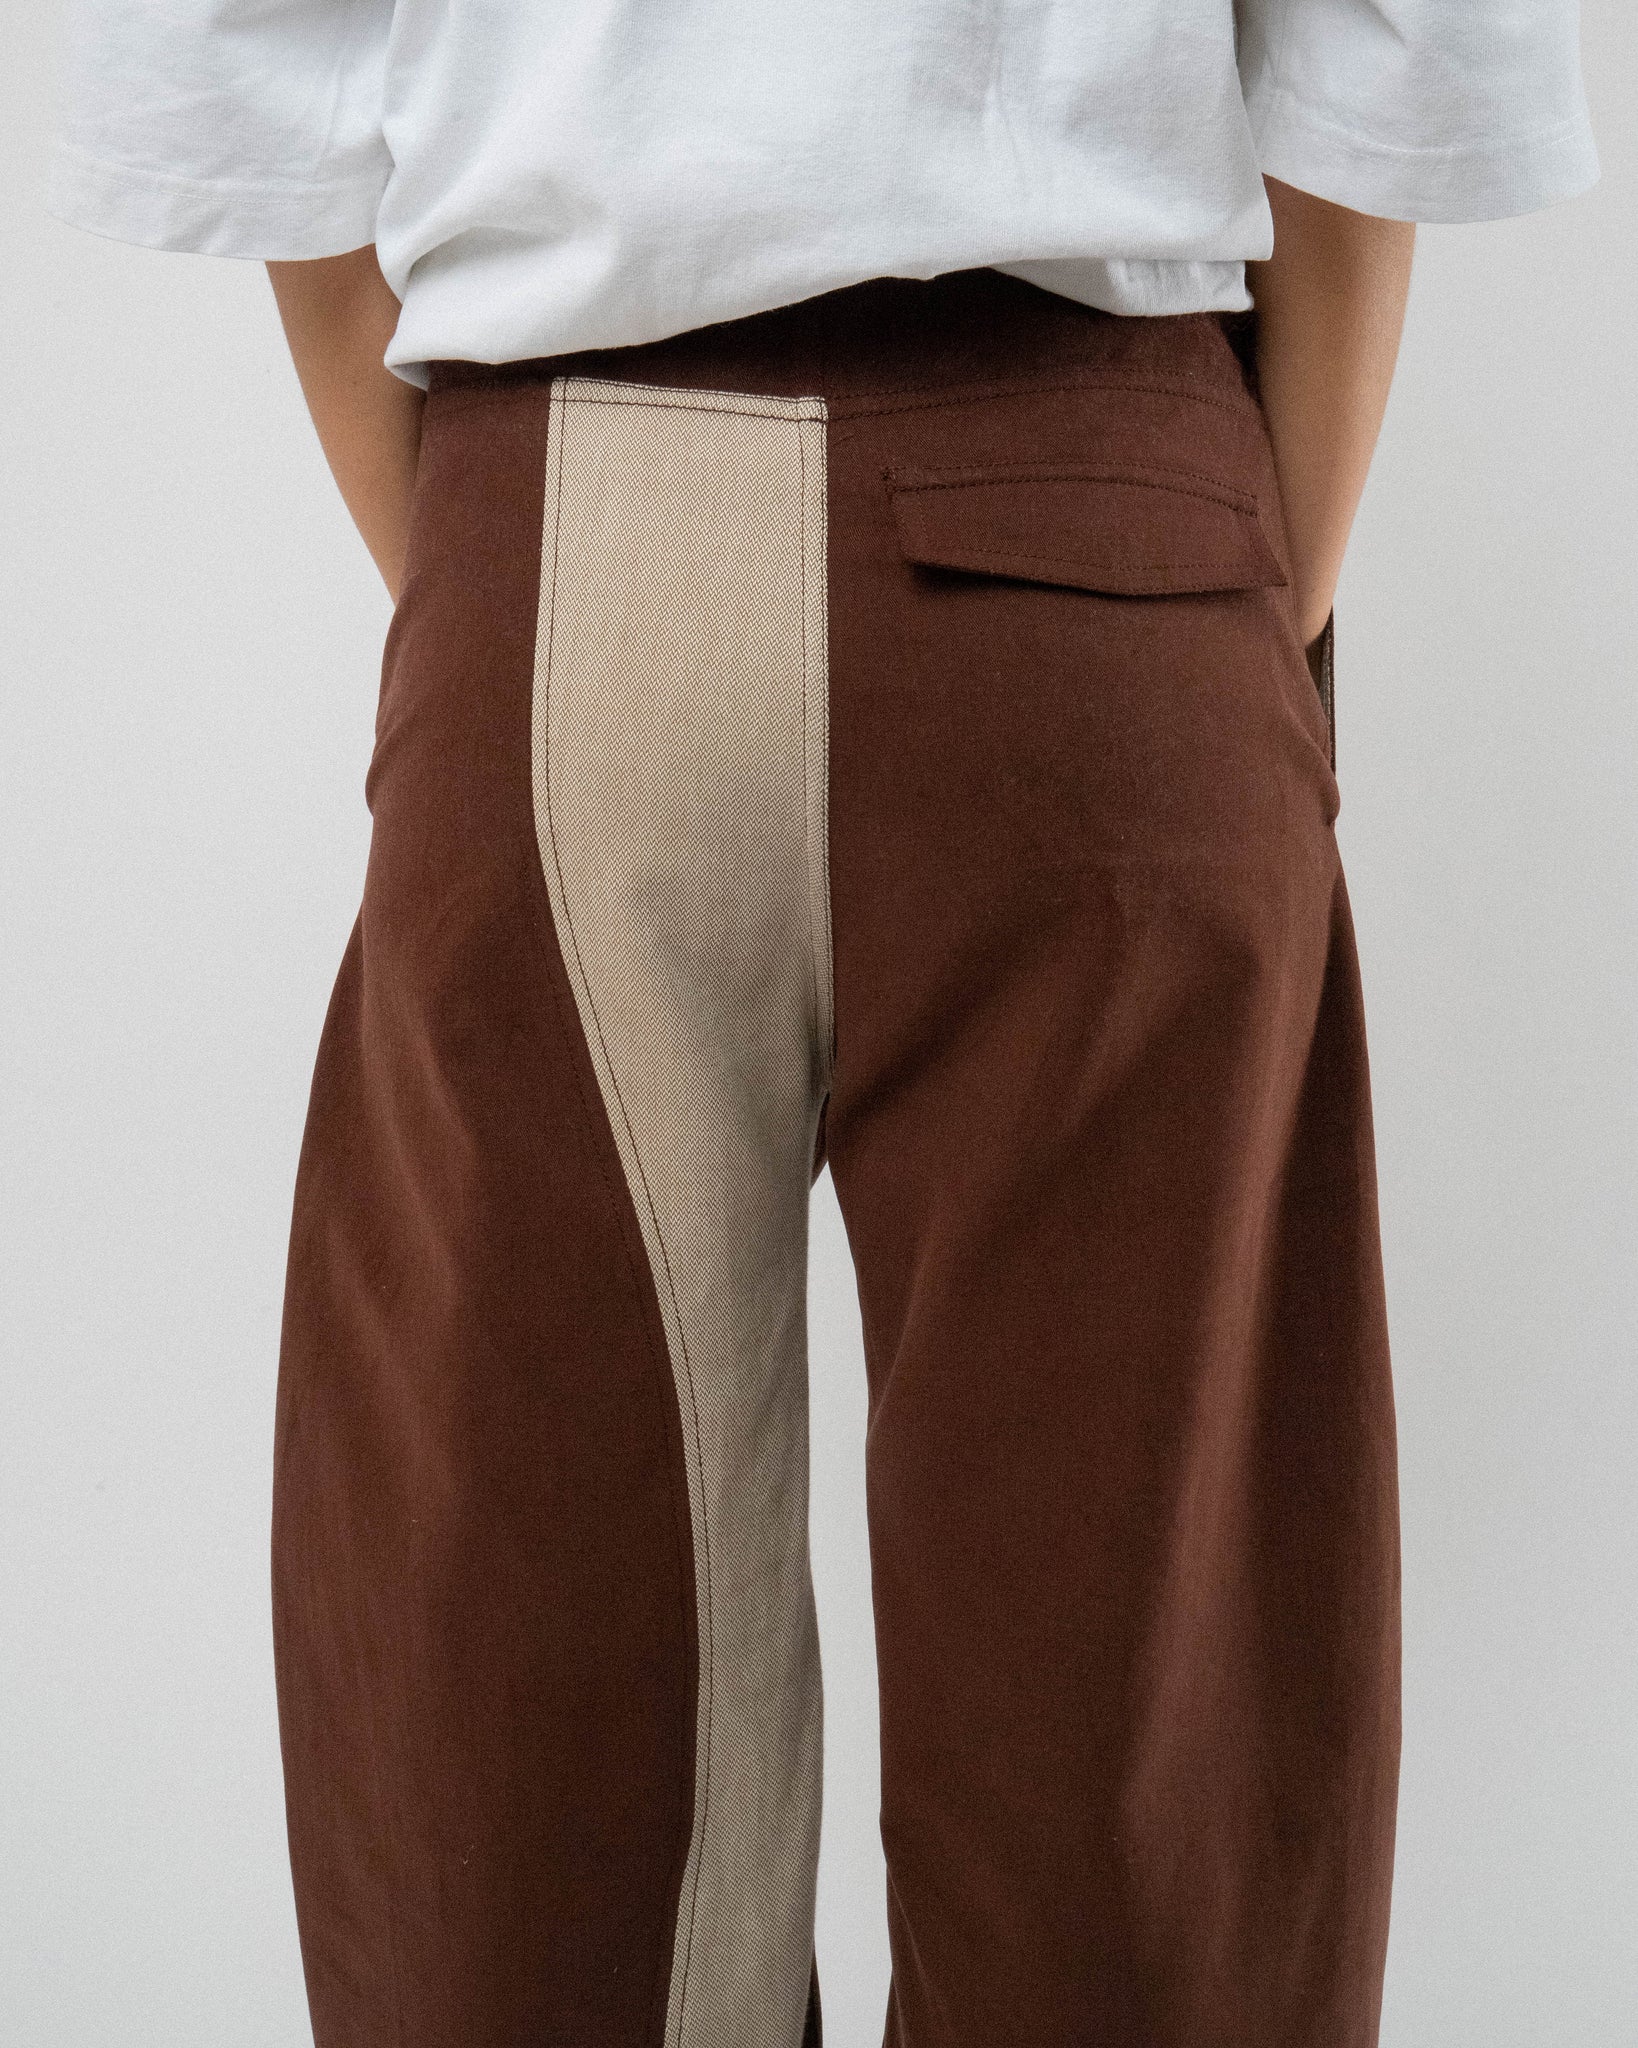 Chestnut Peachskin Trousers